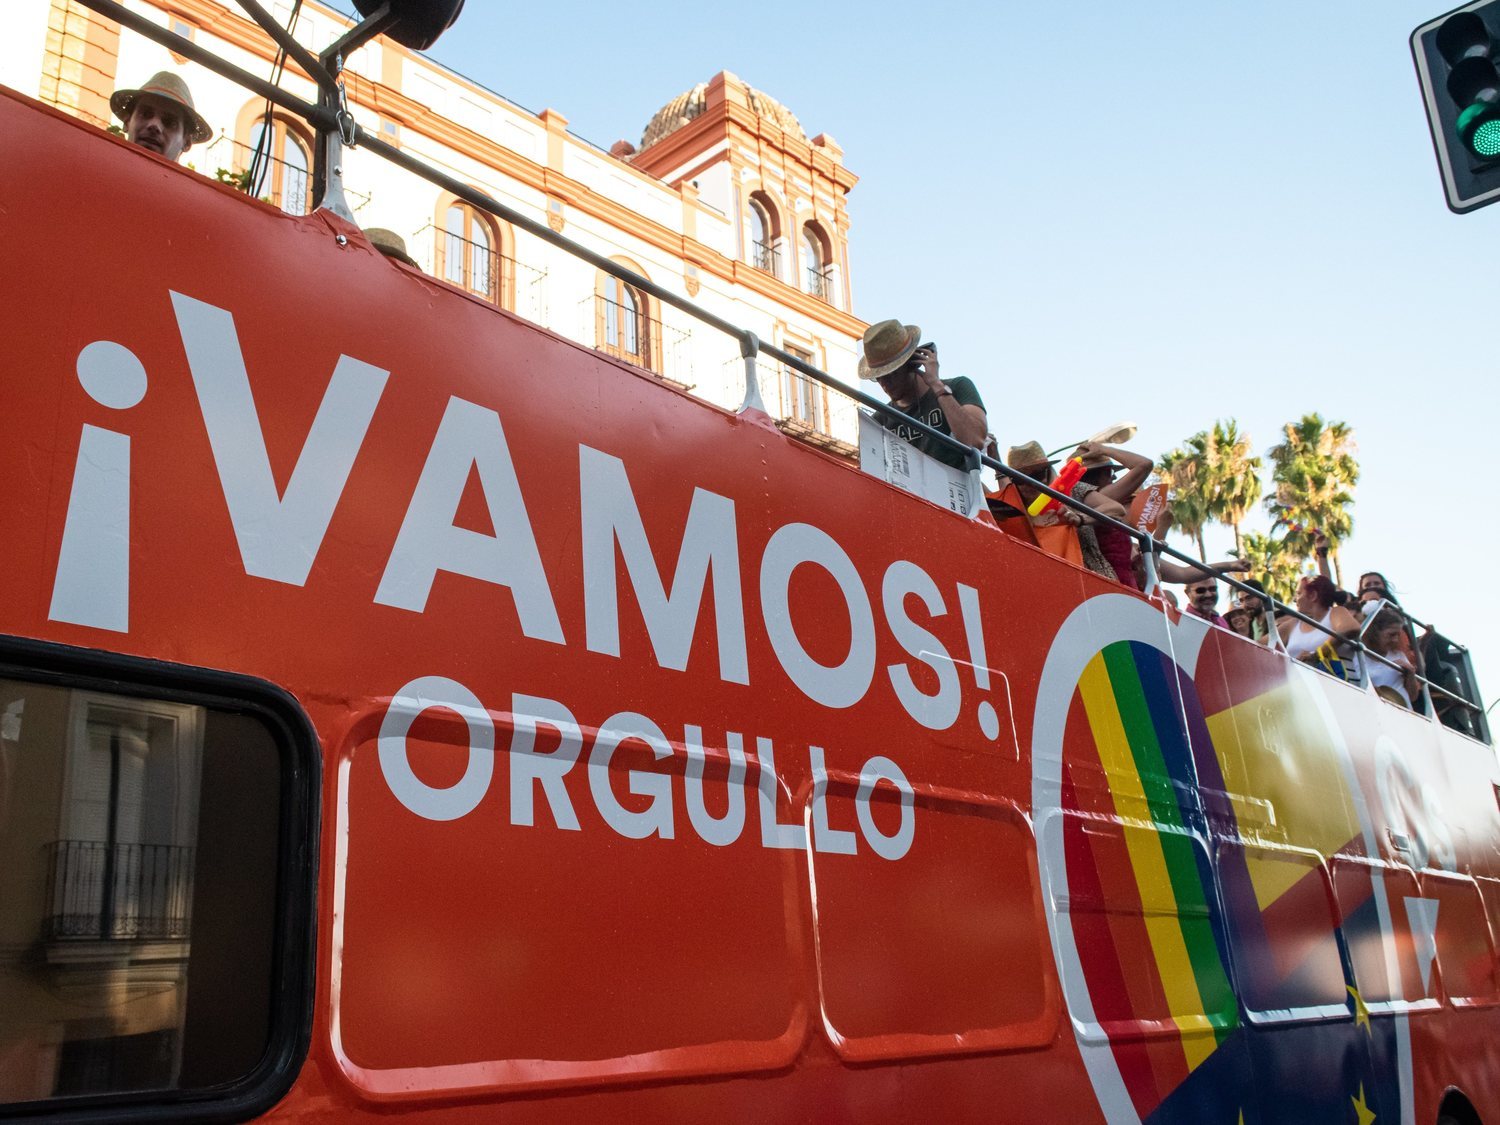 Nuevo escrache a Ciudadanos en el Orgullo de Alicante: "¡Fuera fascistas!"